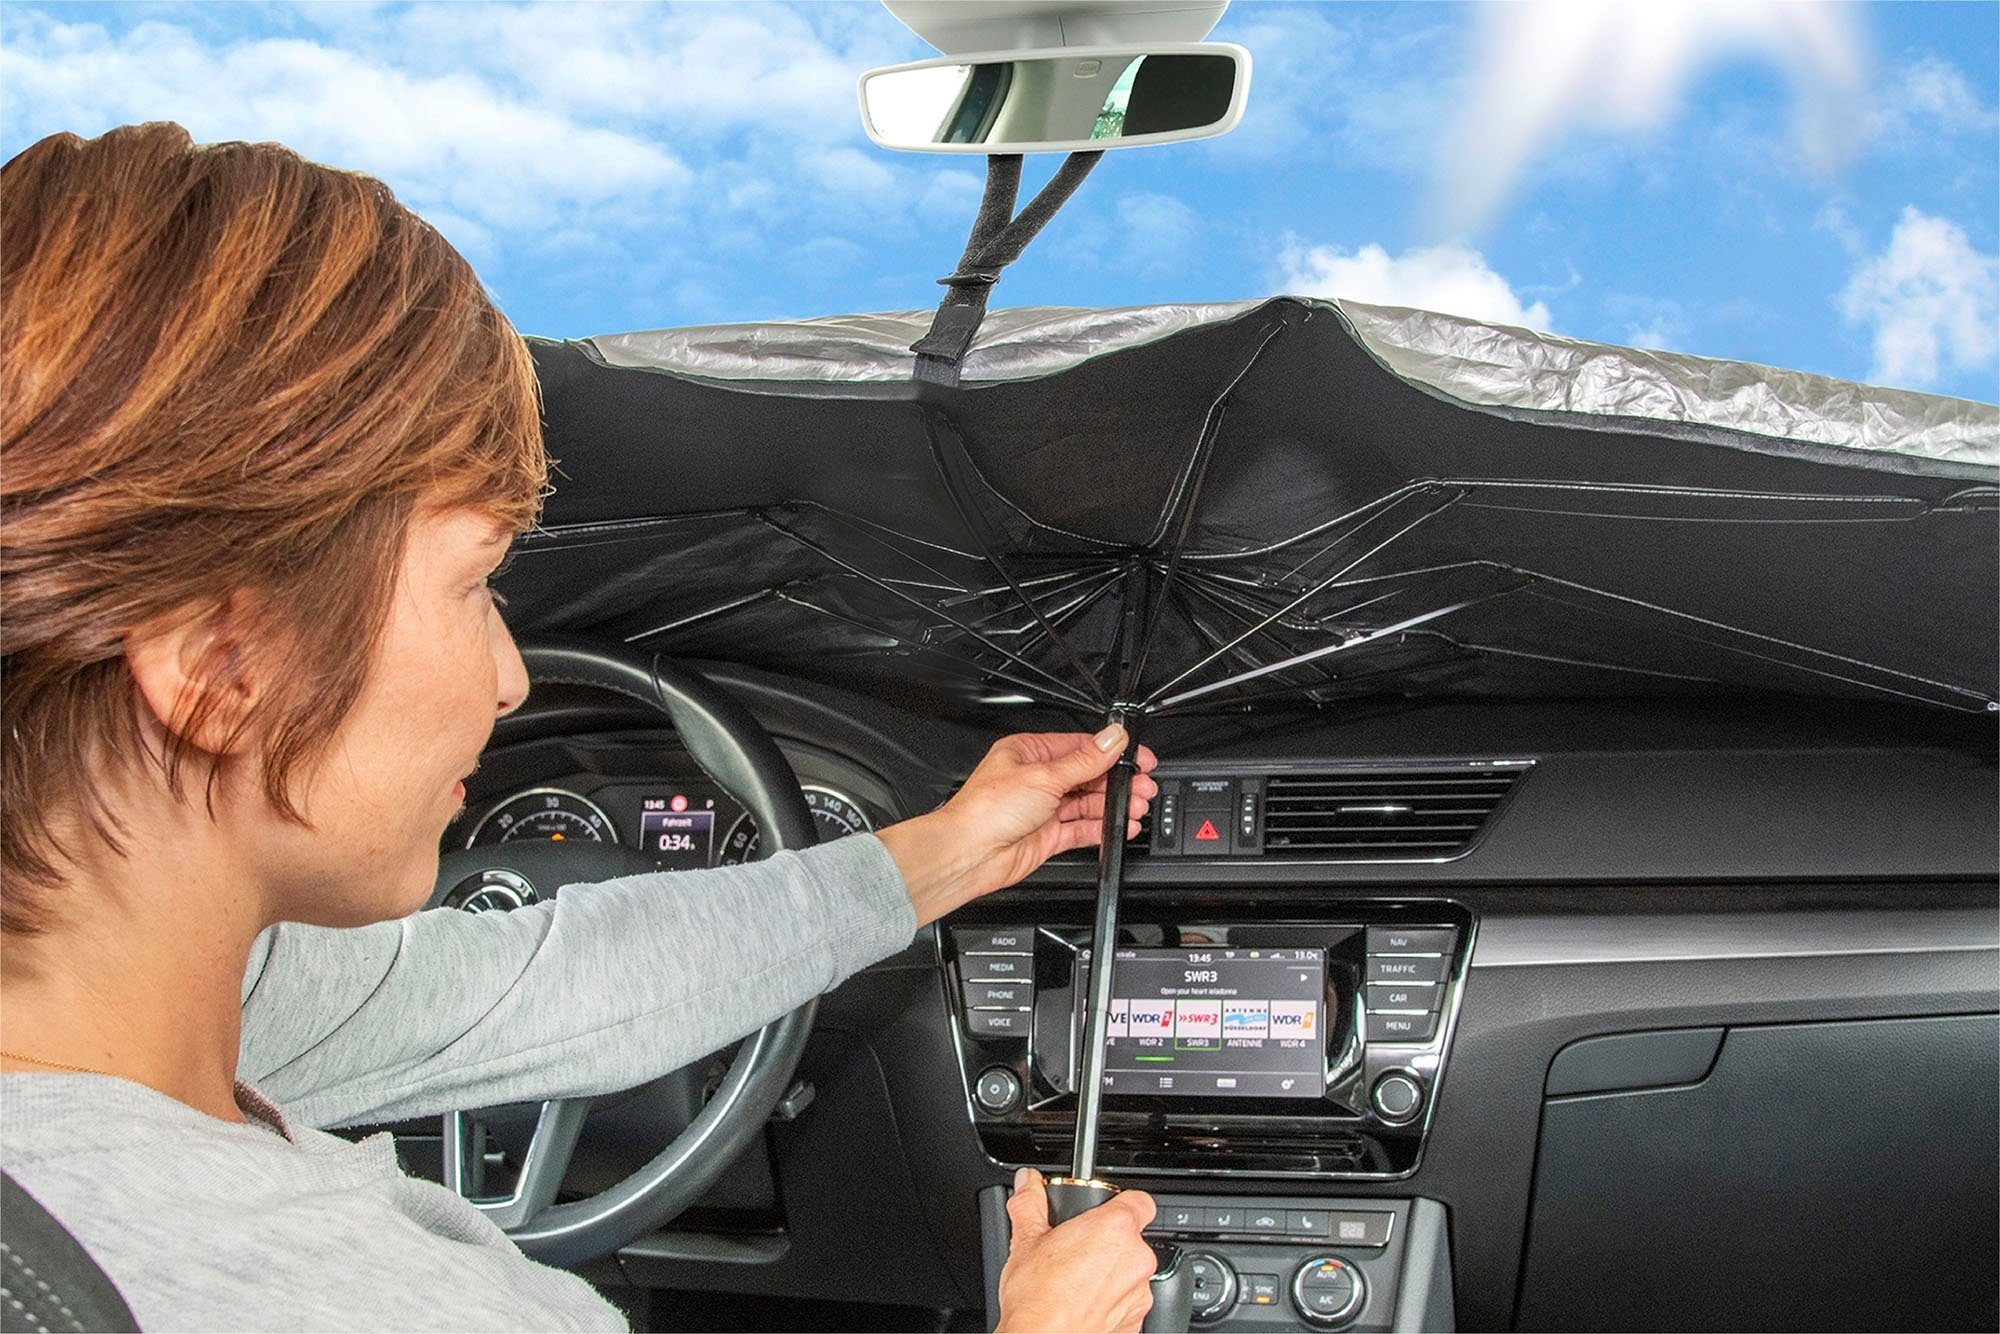 All Ride Frontscheibenabdeckung Auto Frostschutzmatte, (Alu-Beschichtung,  Rückseite mit Schaumstoff Beschichtung), PKW Frontscheibenabdeckung  Universalgröße